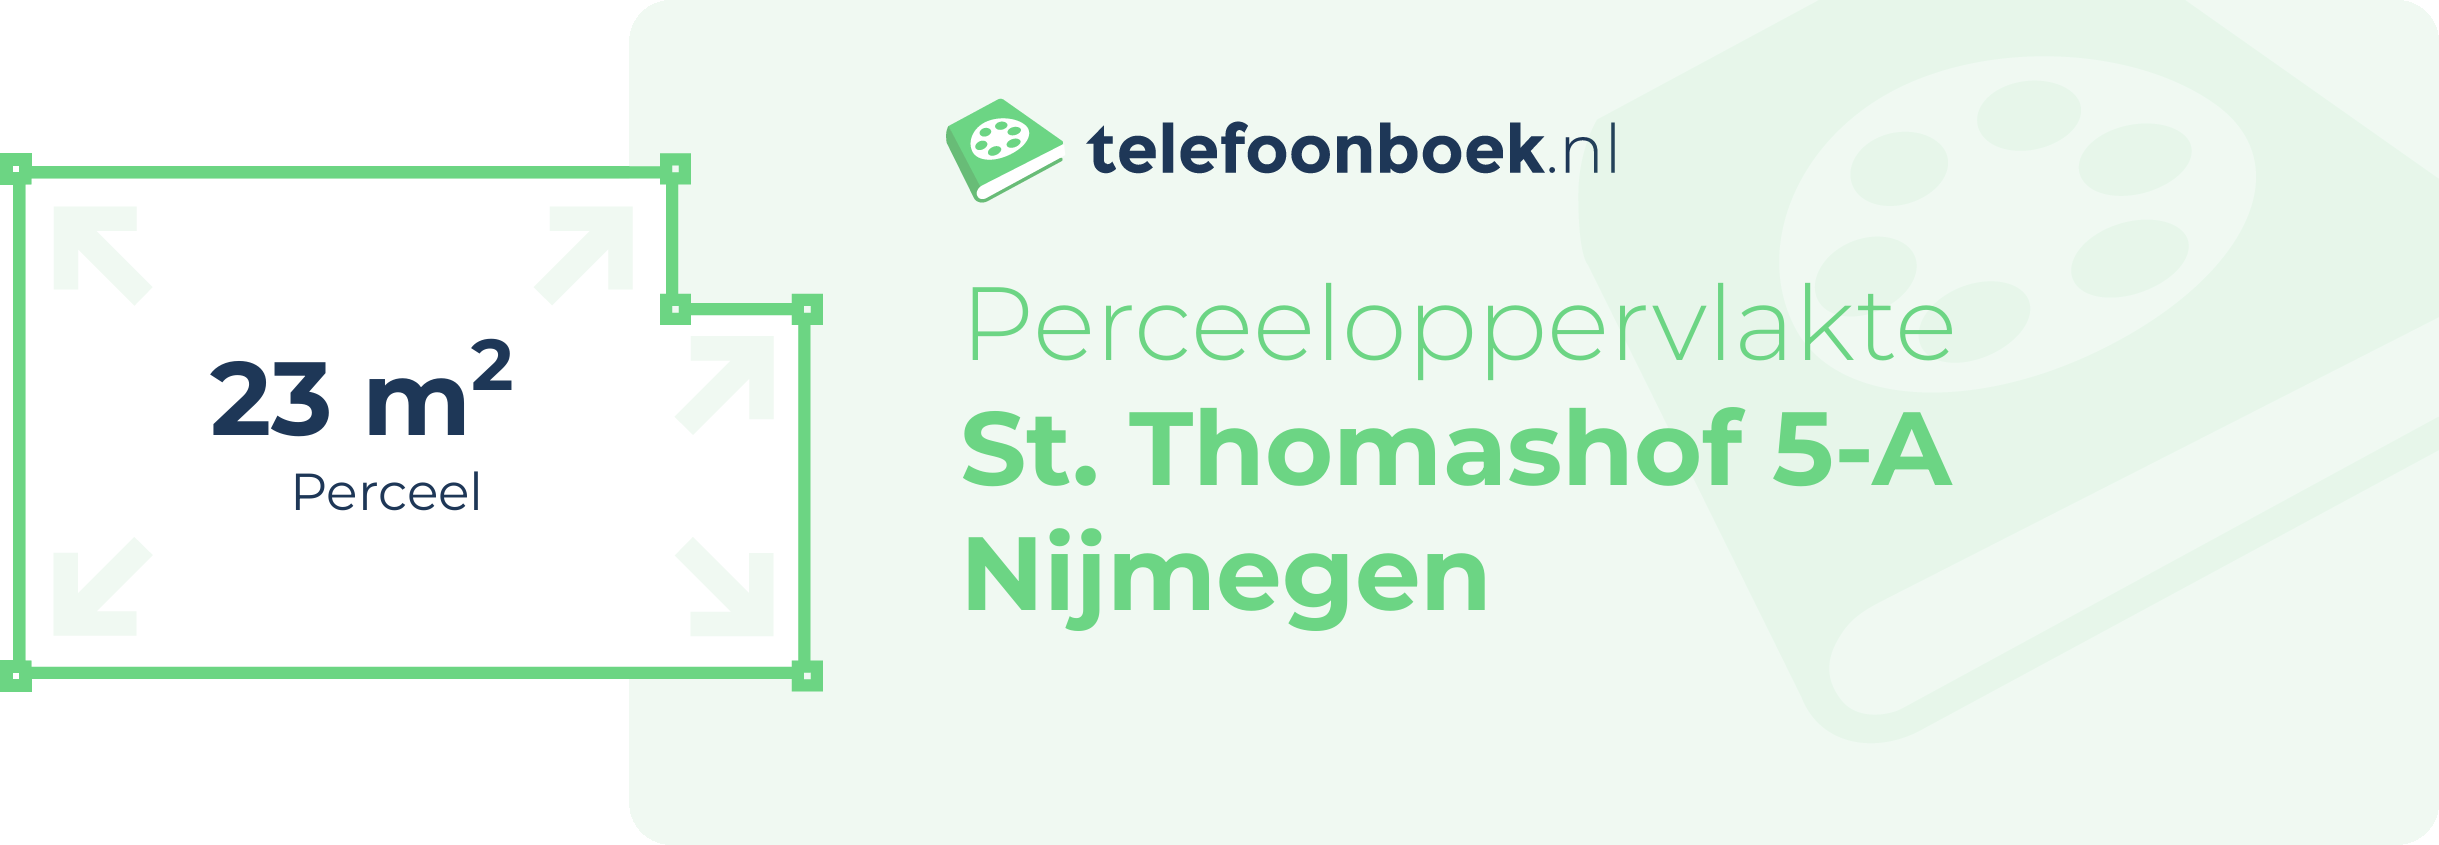 Perceeloppervlakte St. Thomashof 5-A Nijmegen